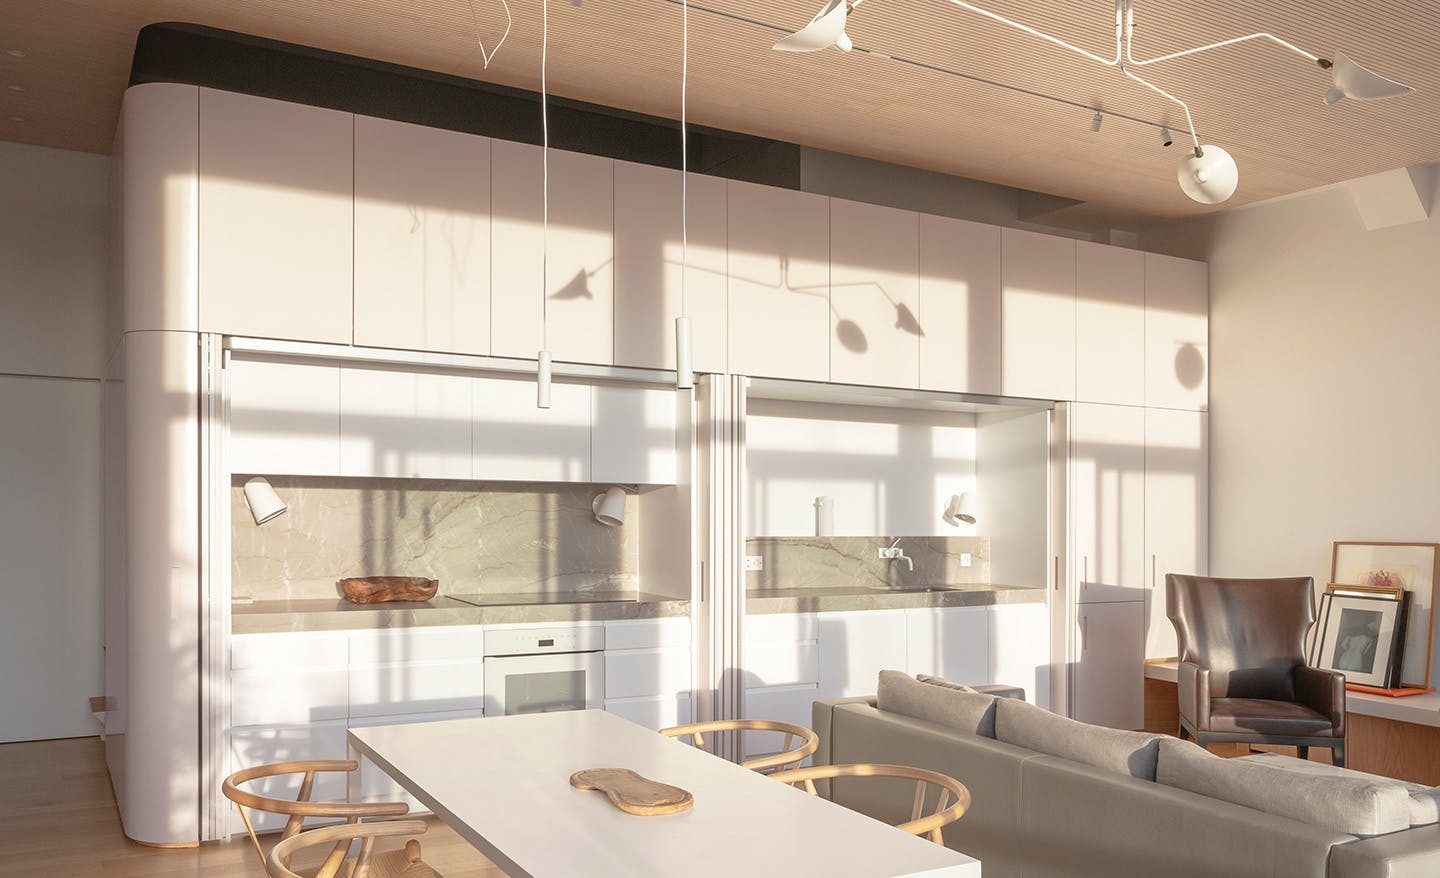 Bildnummer 36 des aktuellen Abschnitts von An open concept kitchen by MS2 Design Studio in a luxury South Beach condo von Cosentino Deutschland